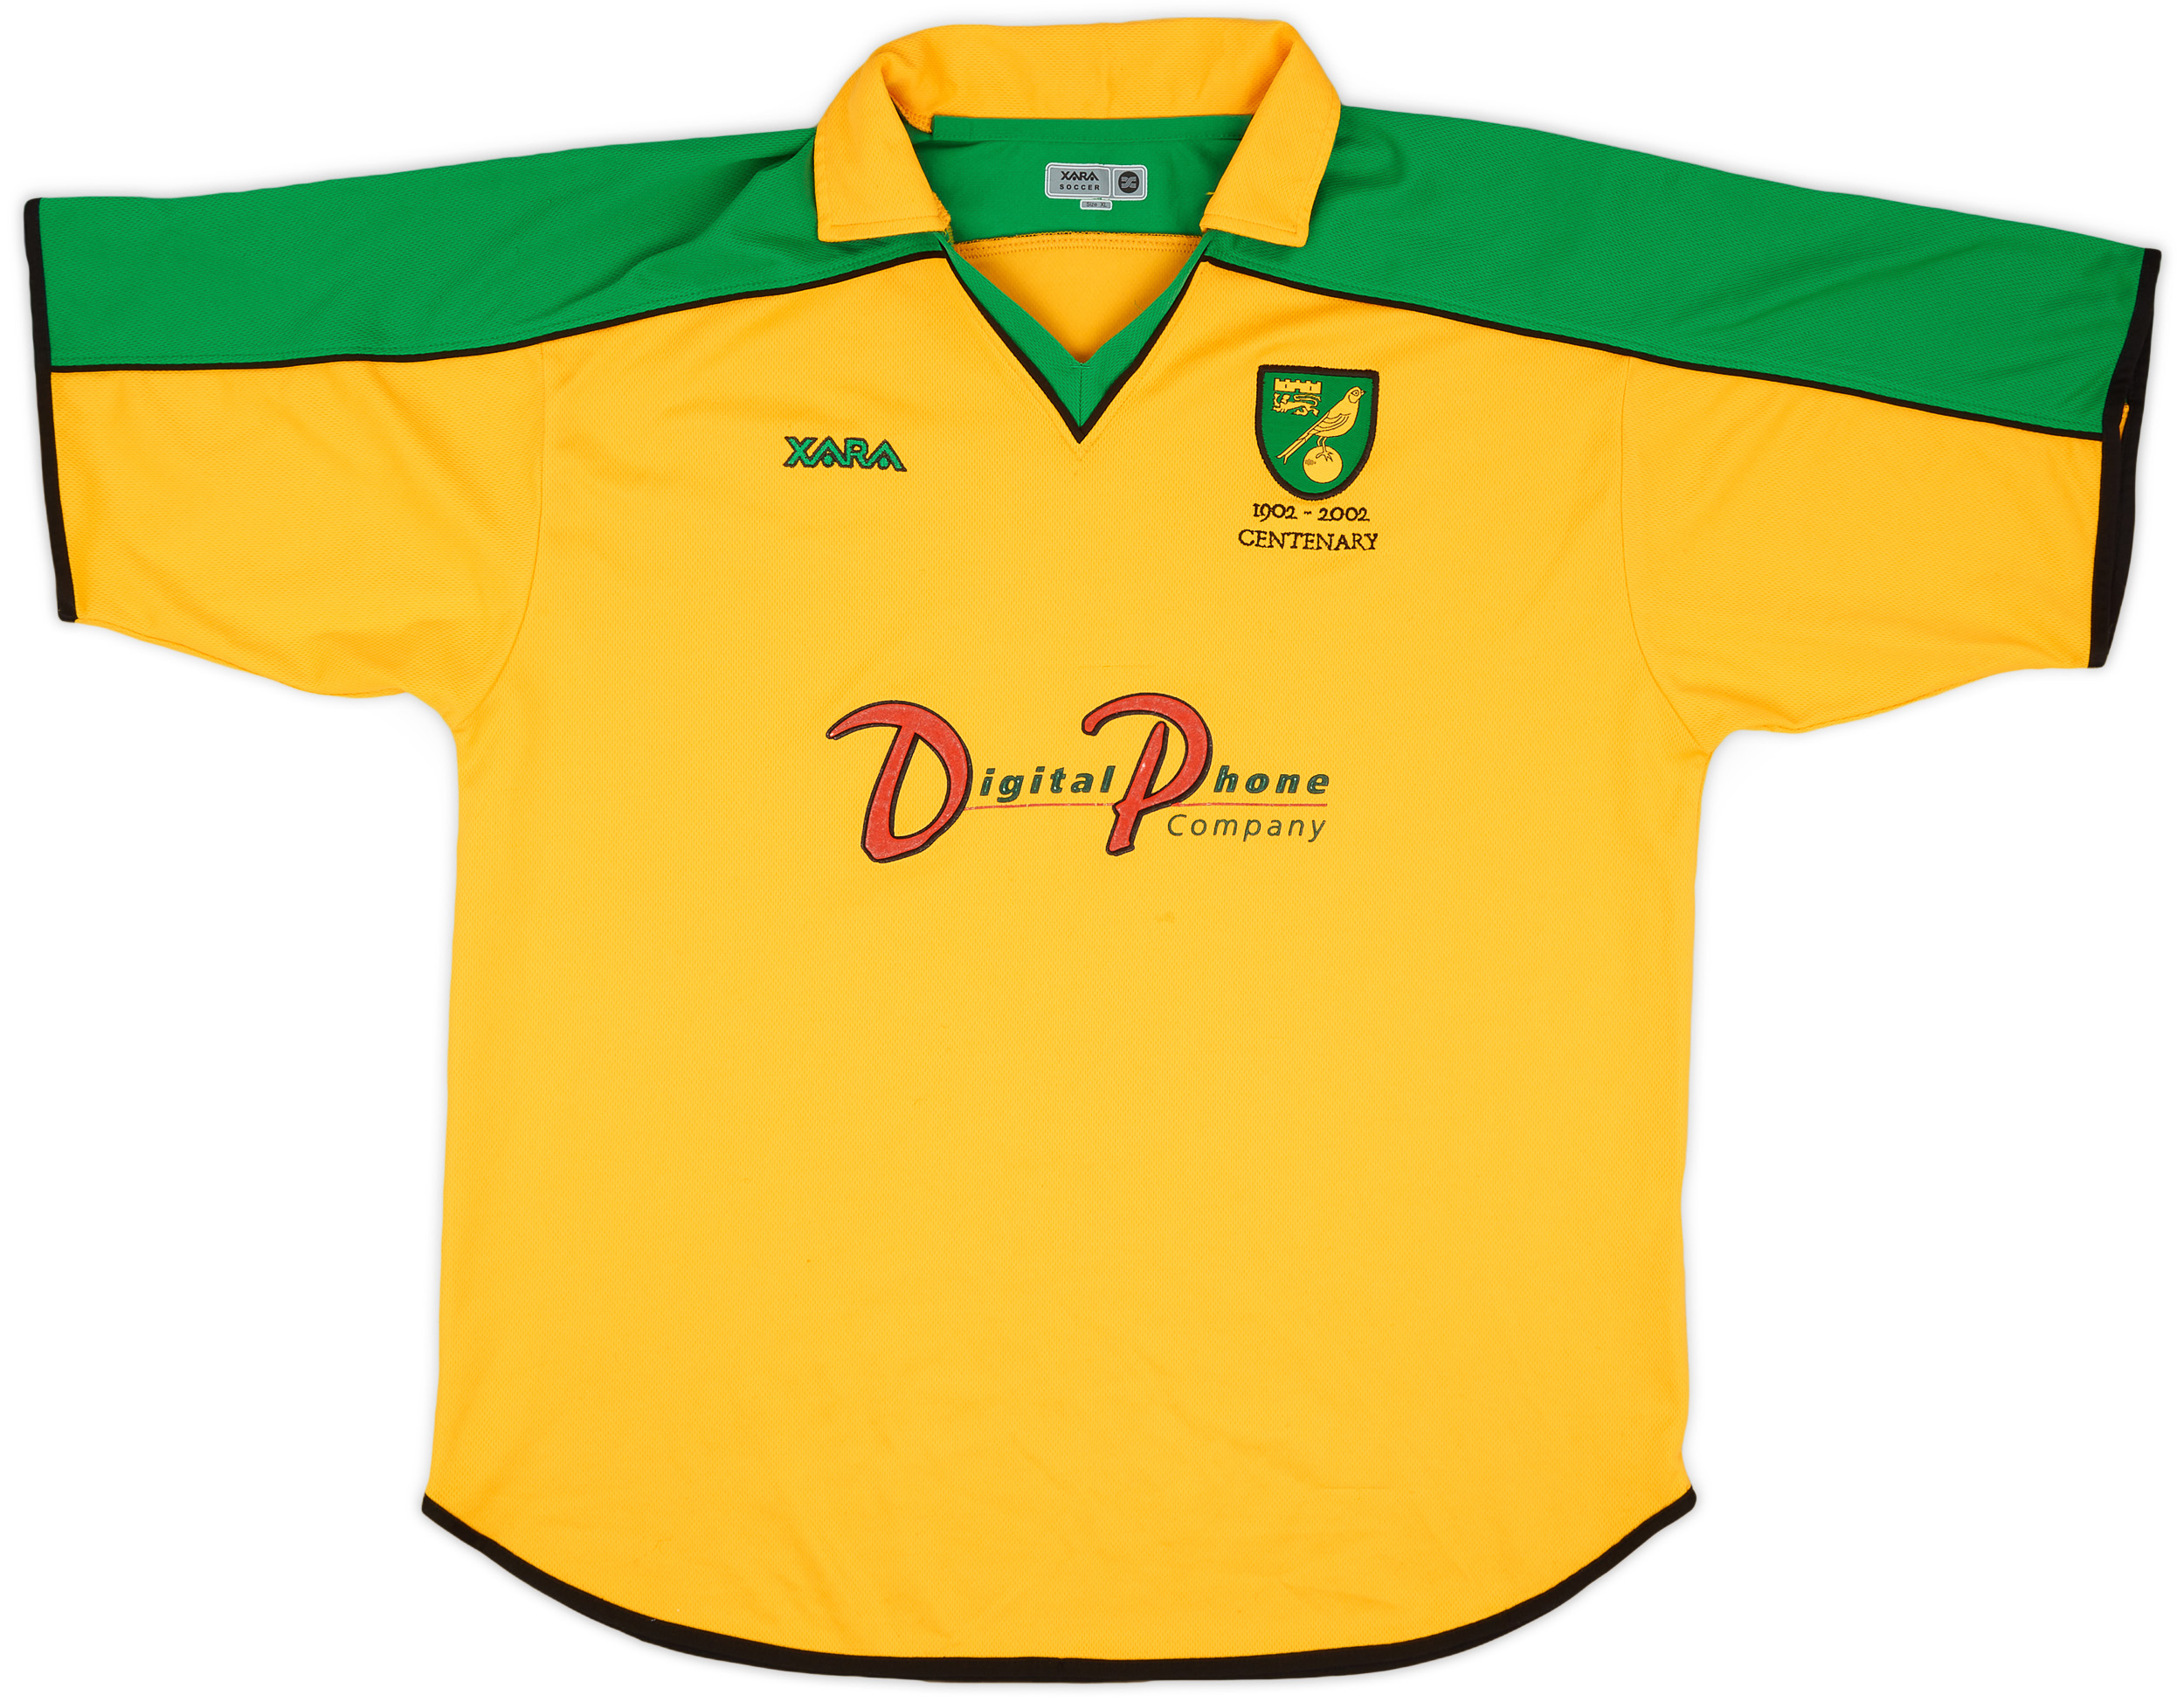 2001-03 Norwich City Centenary Home Shirt - 8/10 - ()